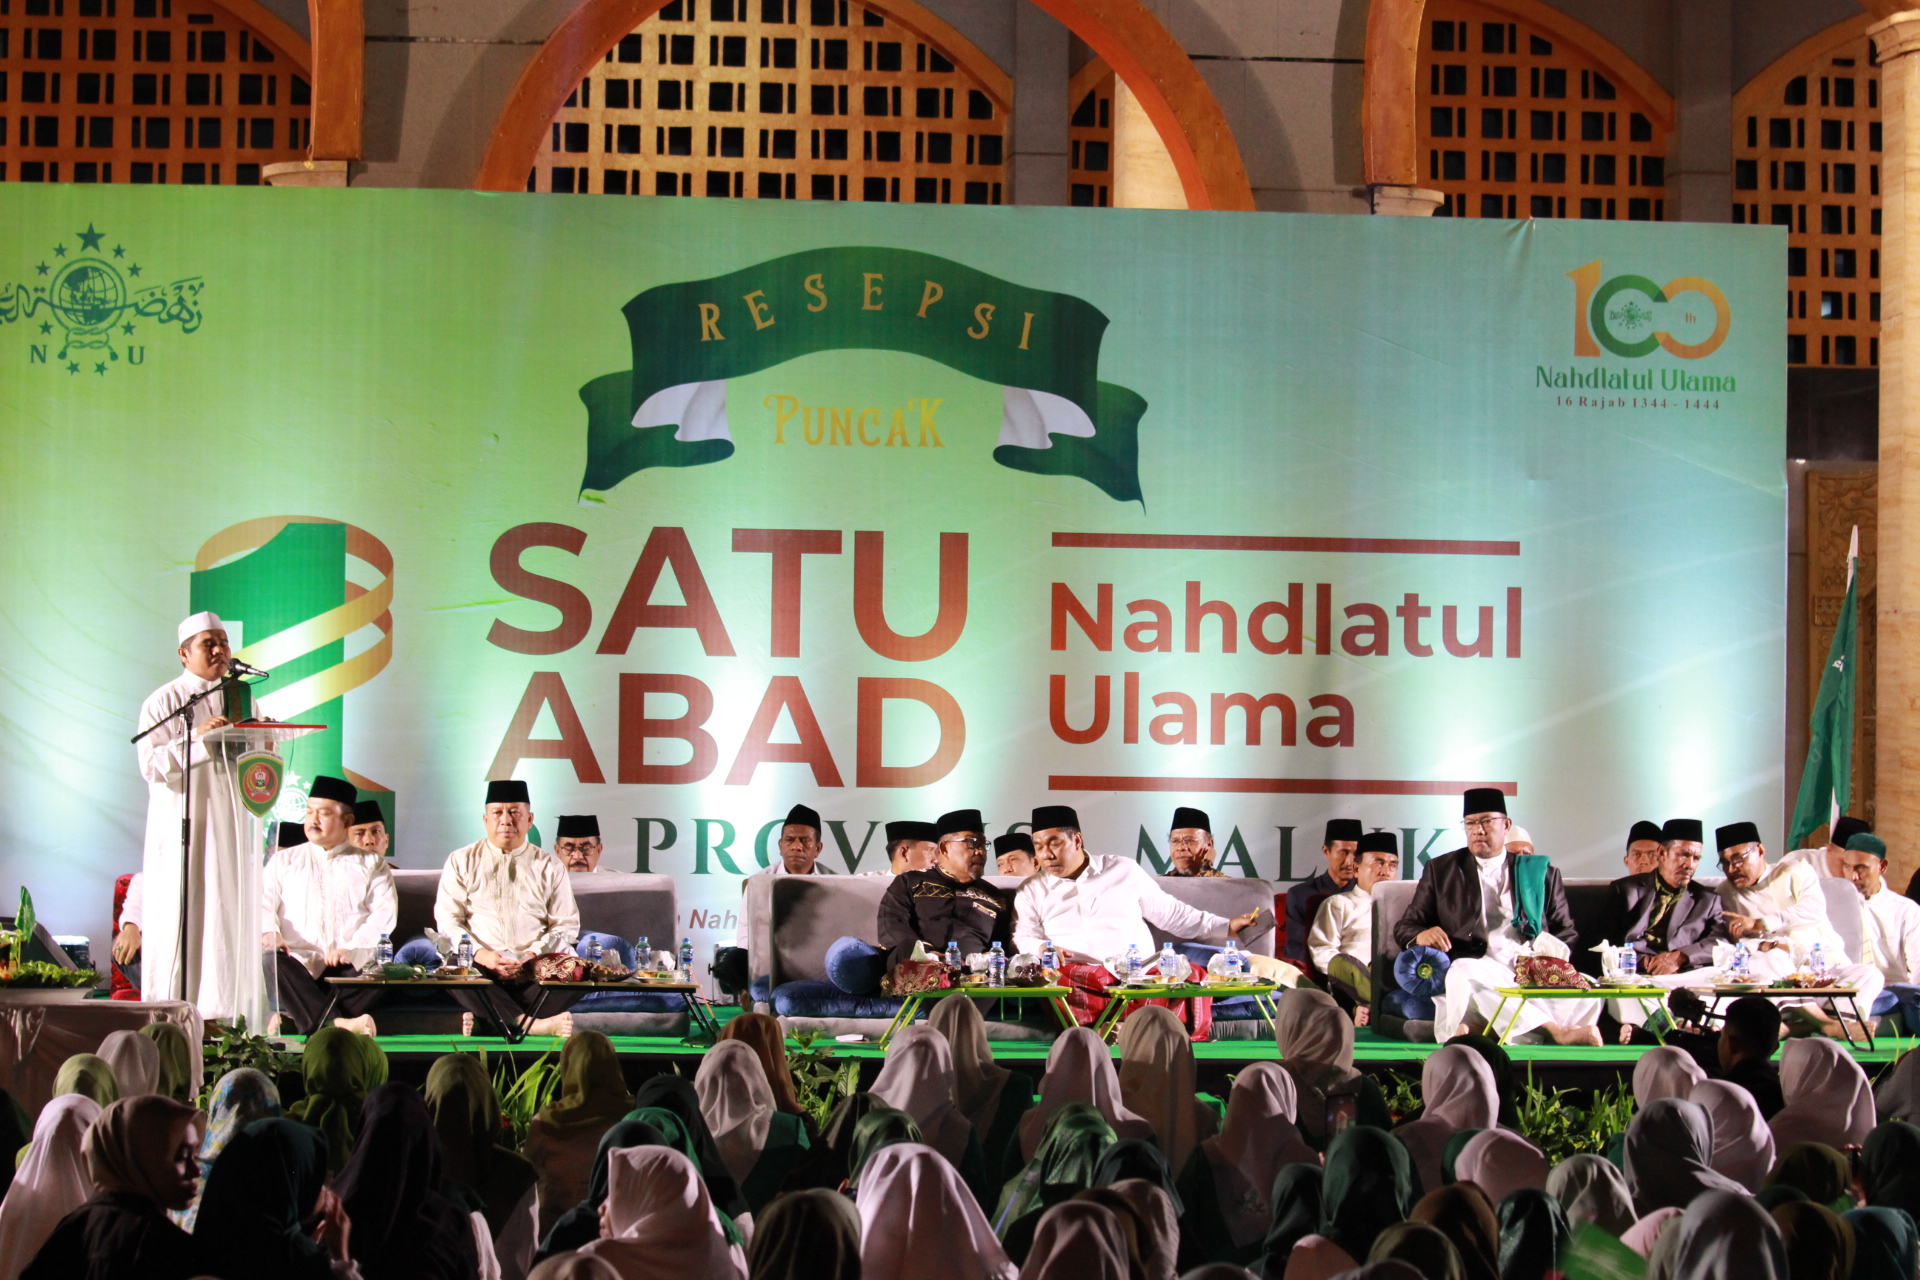 Perayaan Satu Abad Nahdatul Ulama (NU) di Maluku menguatkan relasi antar umat beragama. - Official Website IAKN AMBON